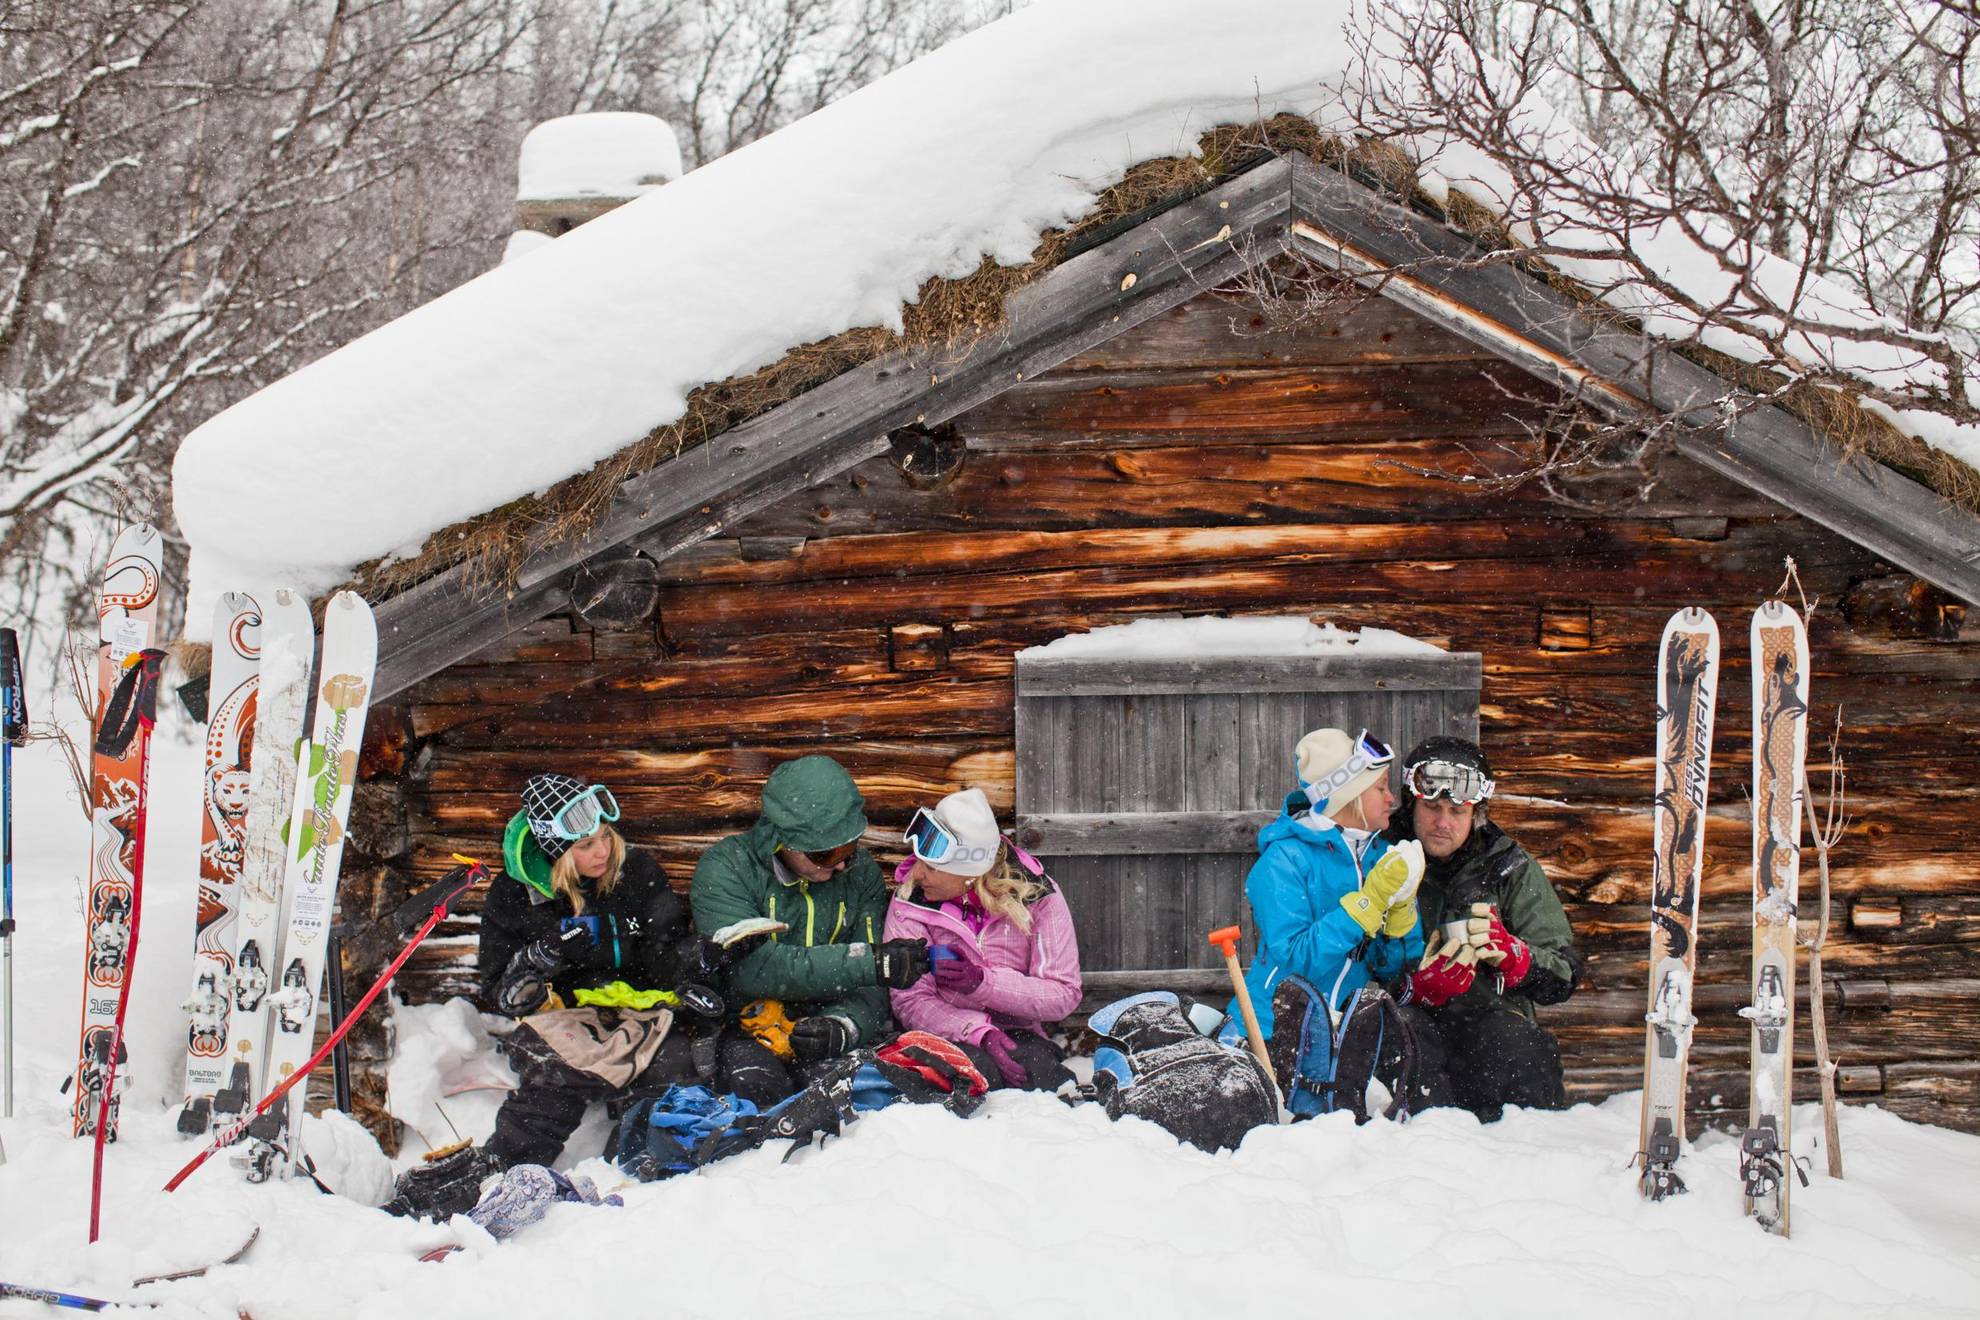 Cinq personnes sont assises dans la neige devant une maison en bois dans les montagnes et font une pause café après avoir skié.